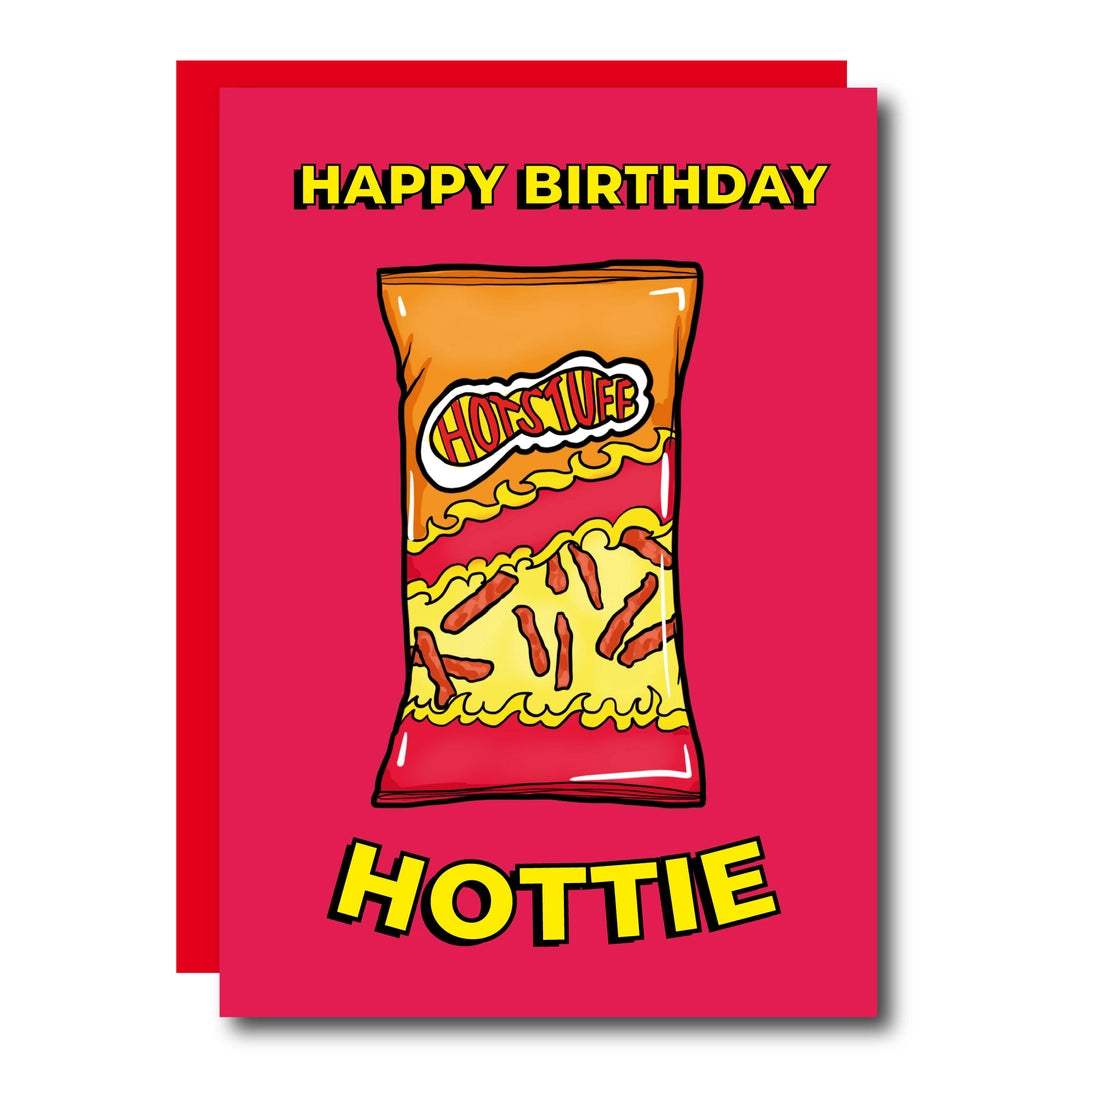 Happy Birthday Hottie